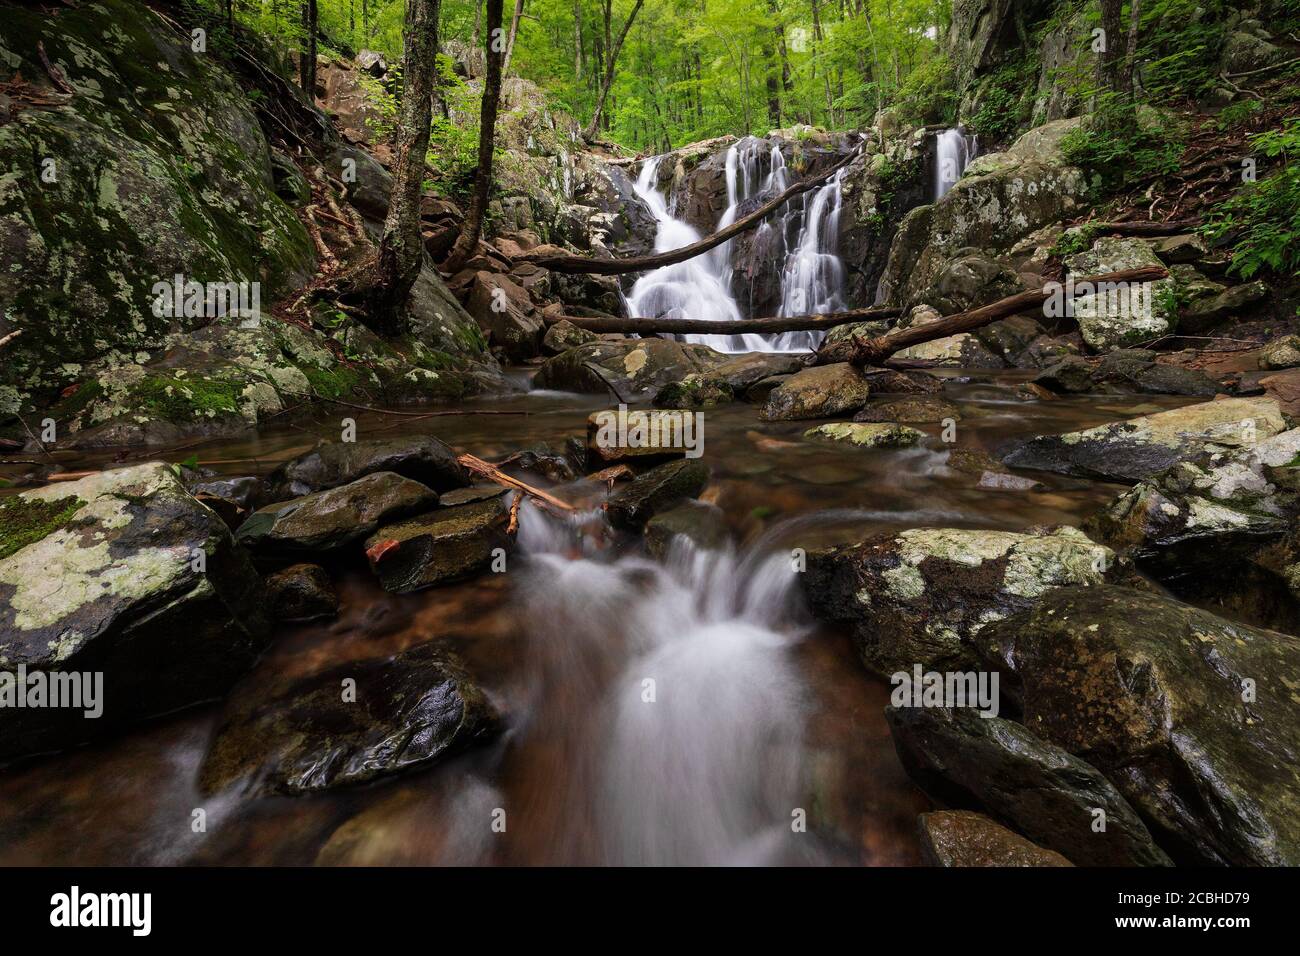 Rapides et chutes de la rivière Rose en arrière-plan avec forêt verte luxuriante du parc national de Shenandoah, Virginie, États-Unis Banque D'Images